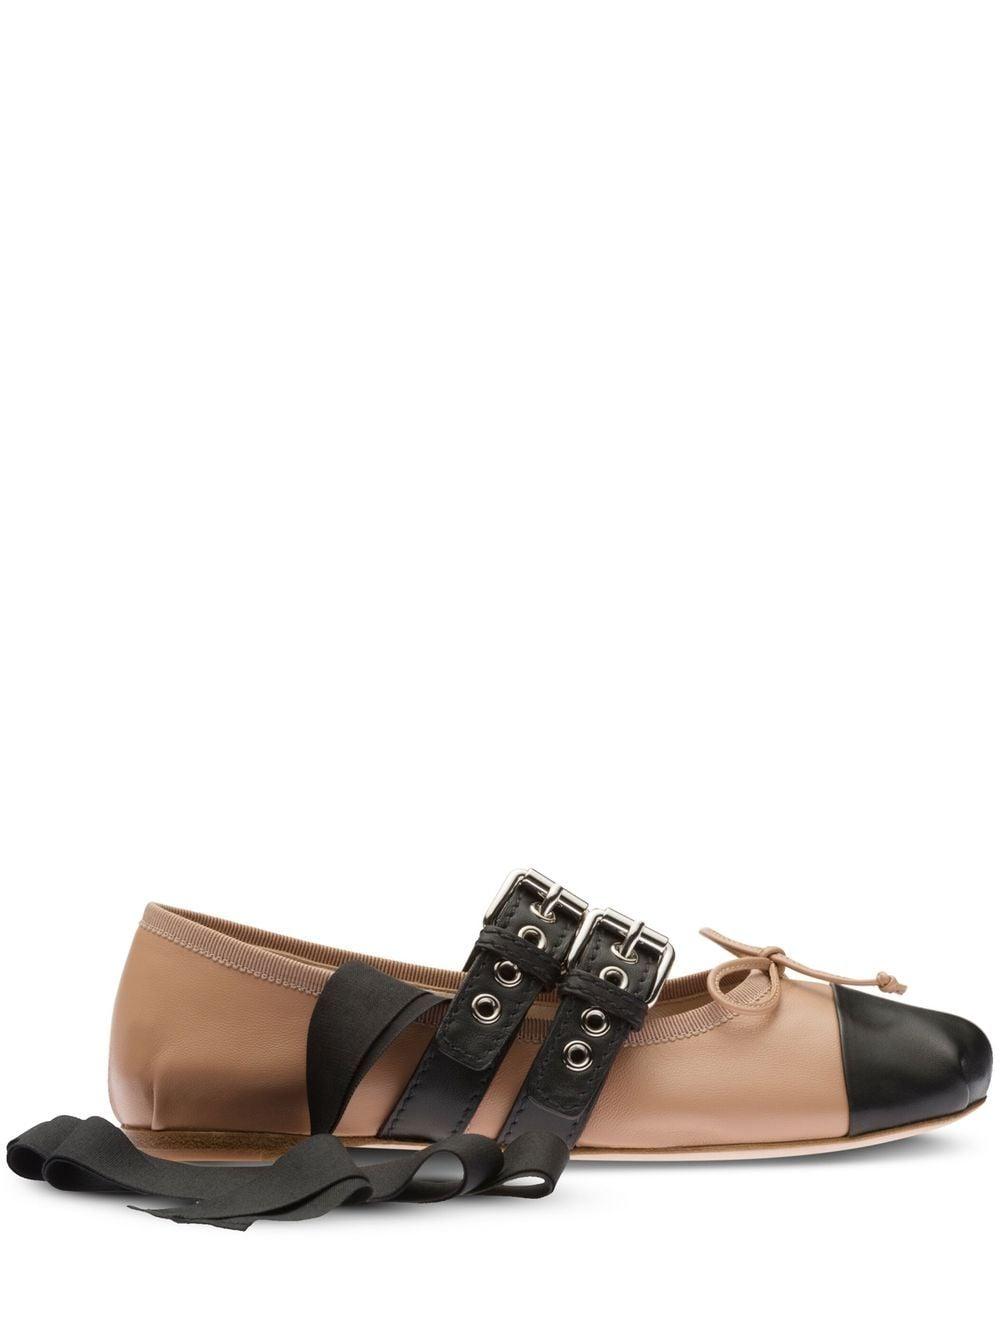 Miu Miu Ankle Tie-fastening Buckle Ballerina Shoes in Brown | Lyst